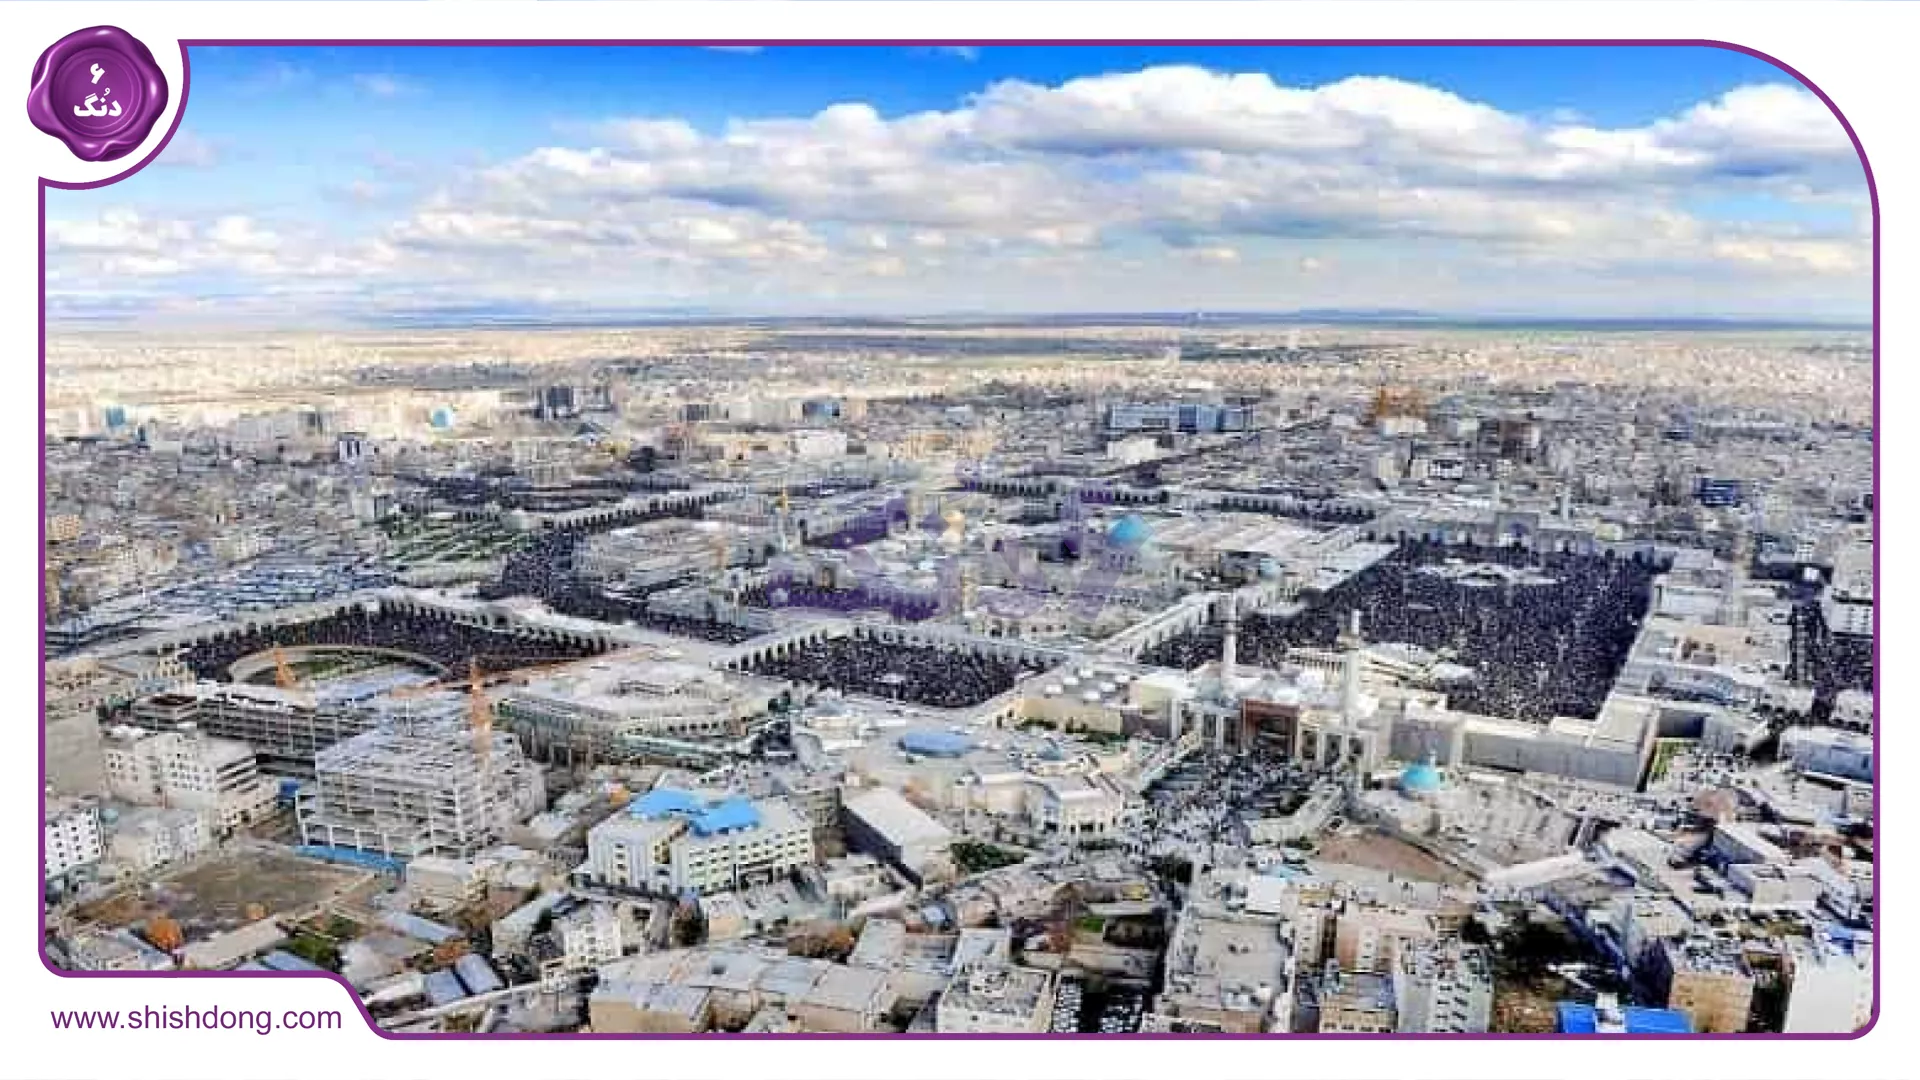 عکسی زیبا از نمای بالای شهر مشهد